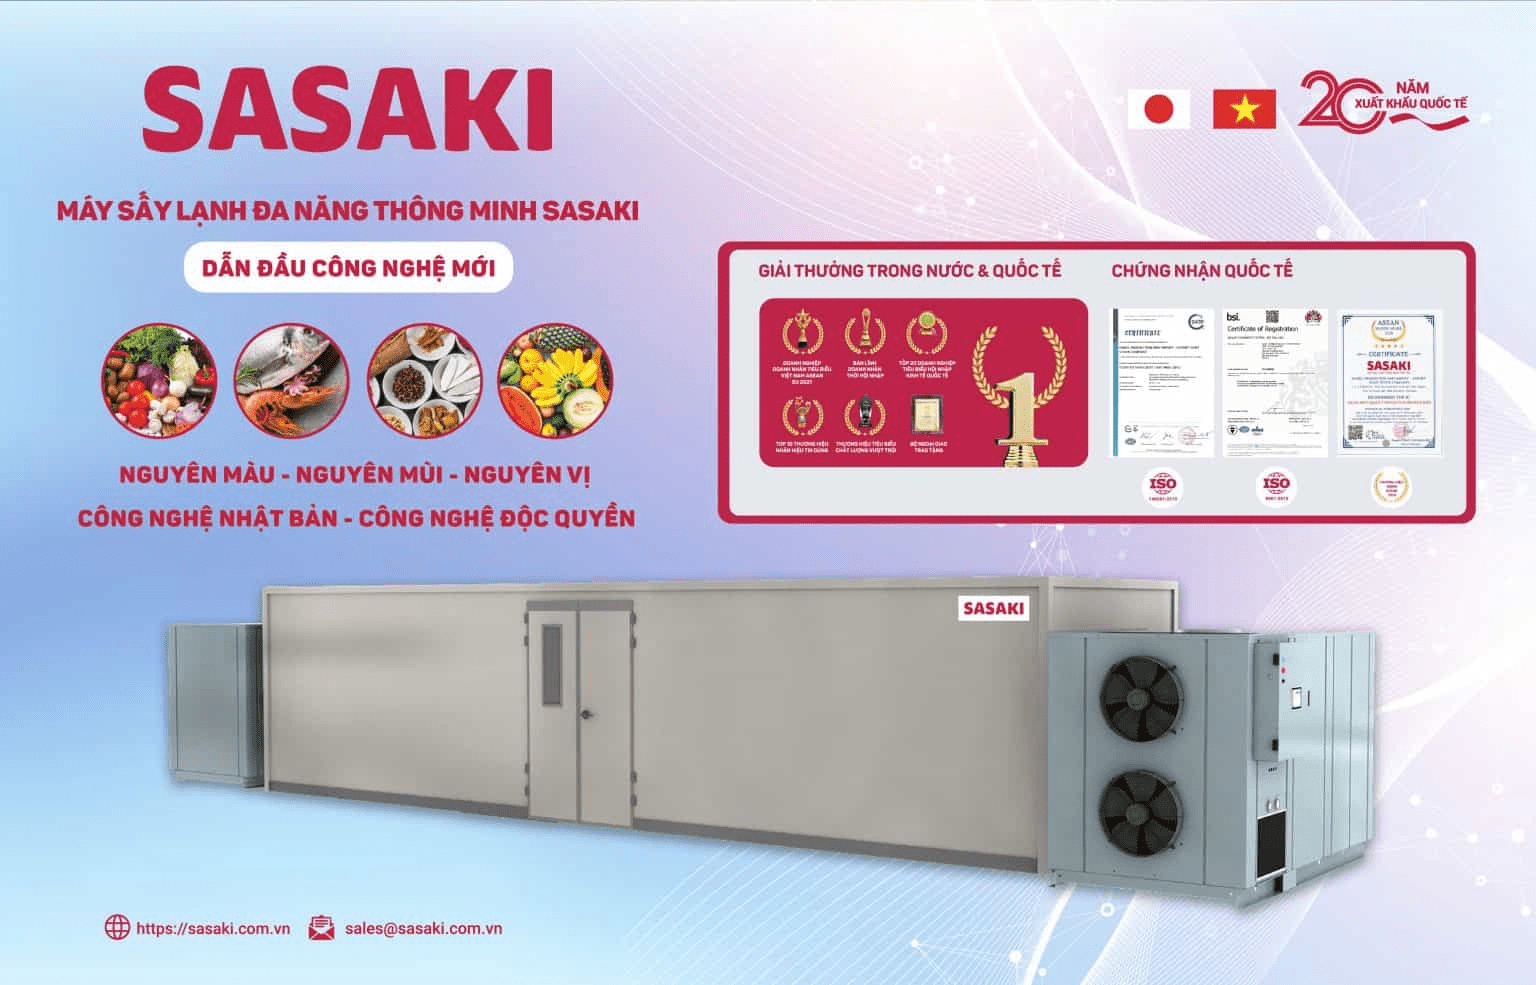  Thời gian sấy của máy sấy lạnh SASAKI chỉ bằng một nửa so với các loại máy sấy thông thường